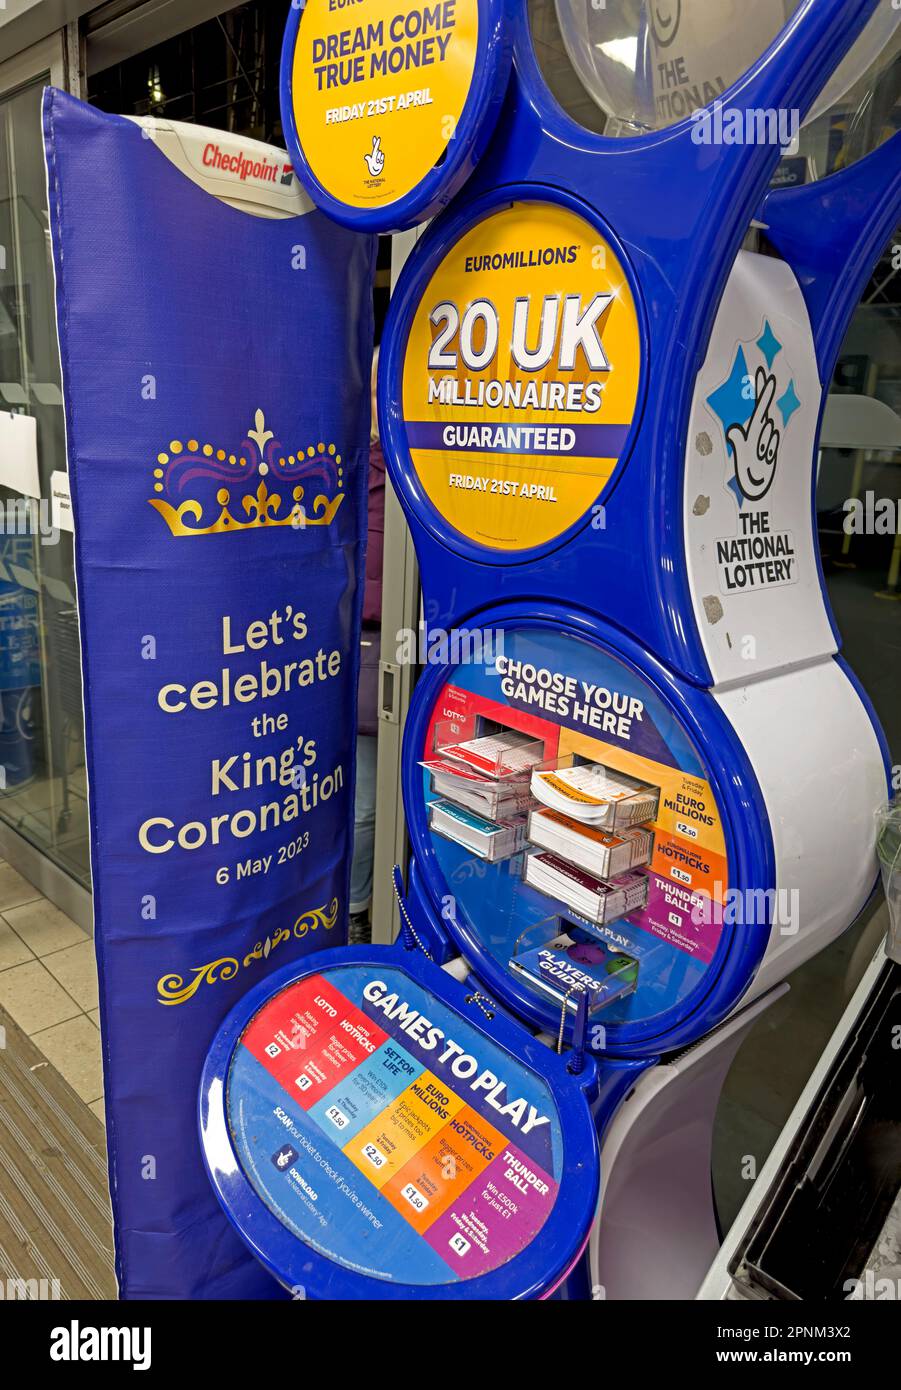 National Lottery 20 millionnaires du Royaume-Uni garantis - célébrons le couronnement des rois, le 6th mai 2023, signe dans un magasin Tesco, au centre-ville de Lincoln Banque D'Images